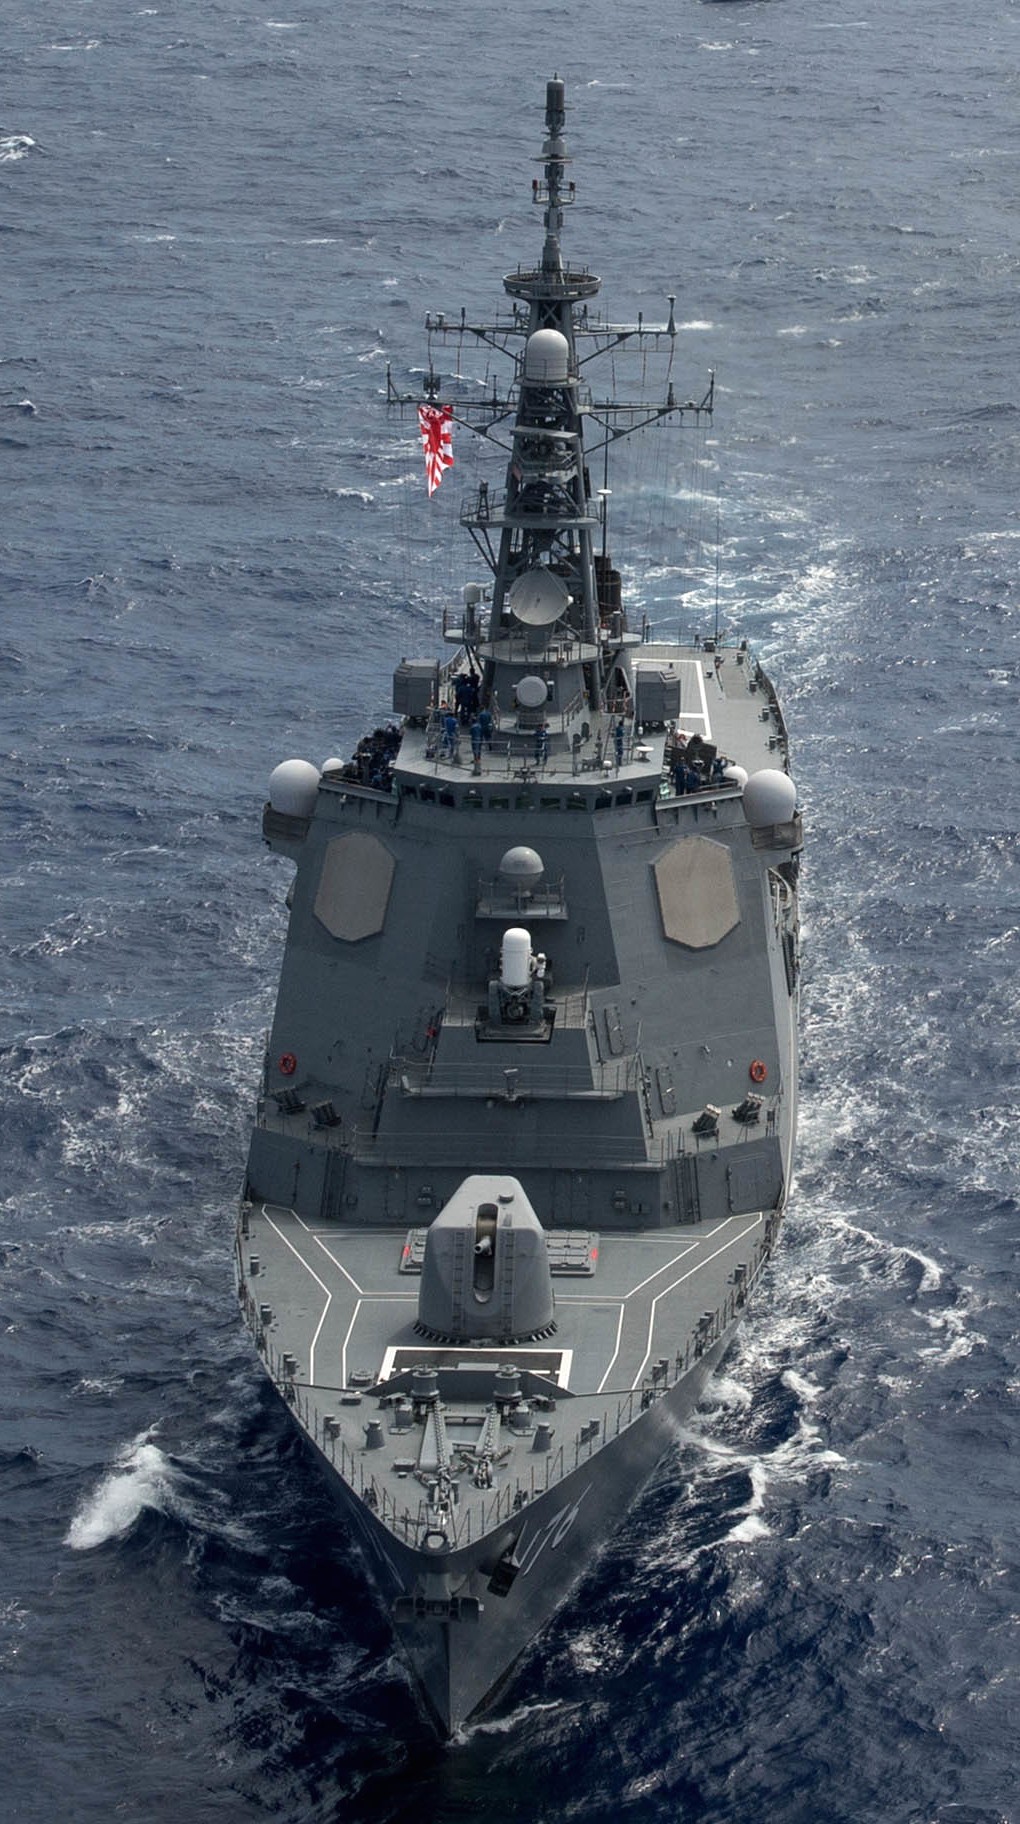 ddg-176 jds chokai kongou class destroyer japan maritime self defense force jmsdf 21